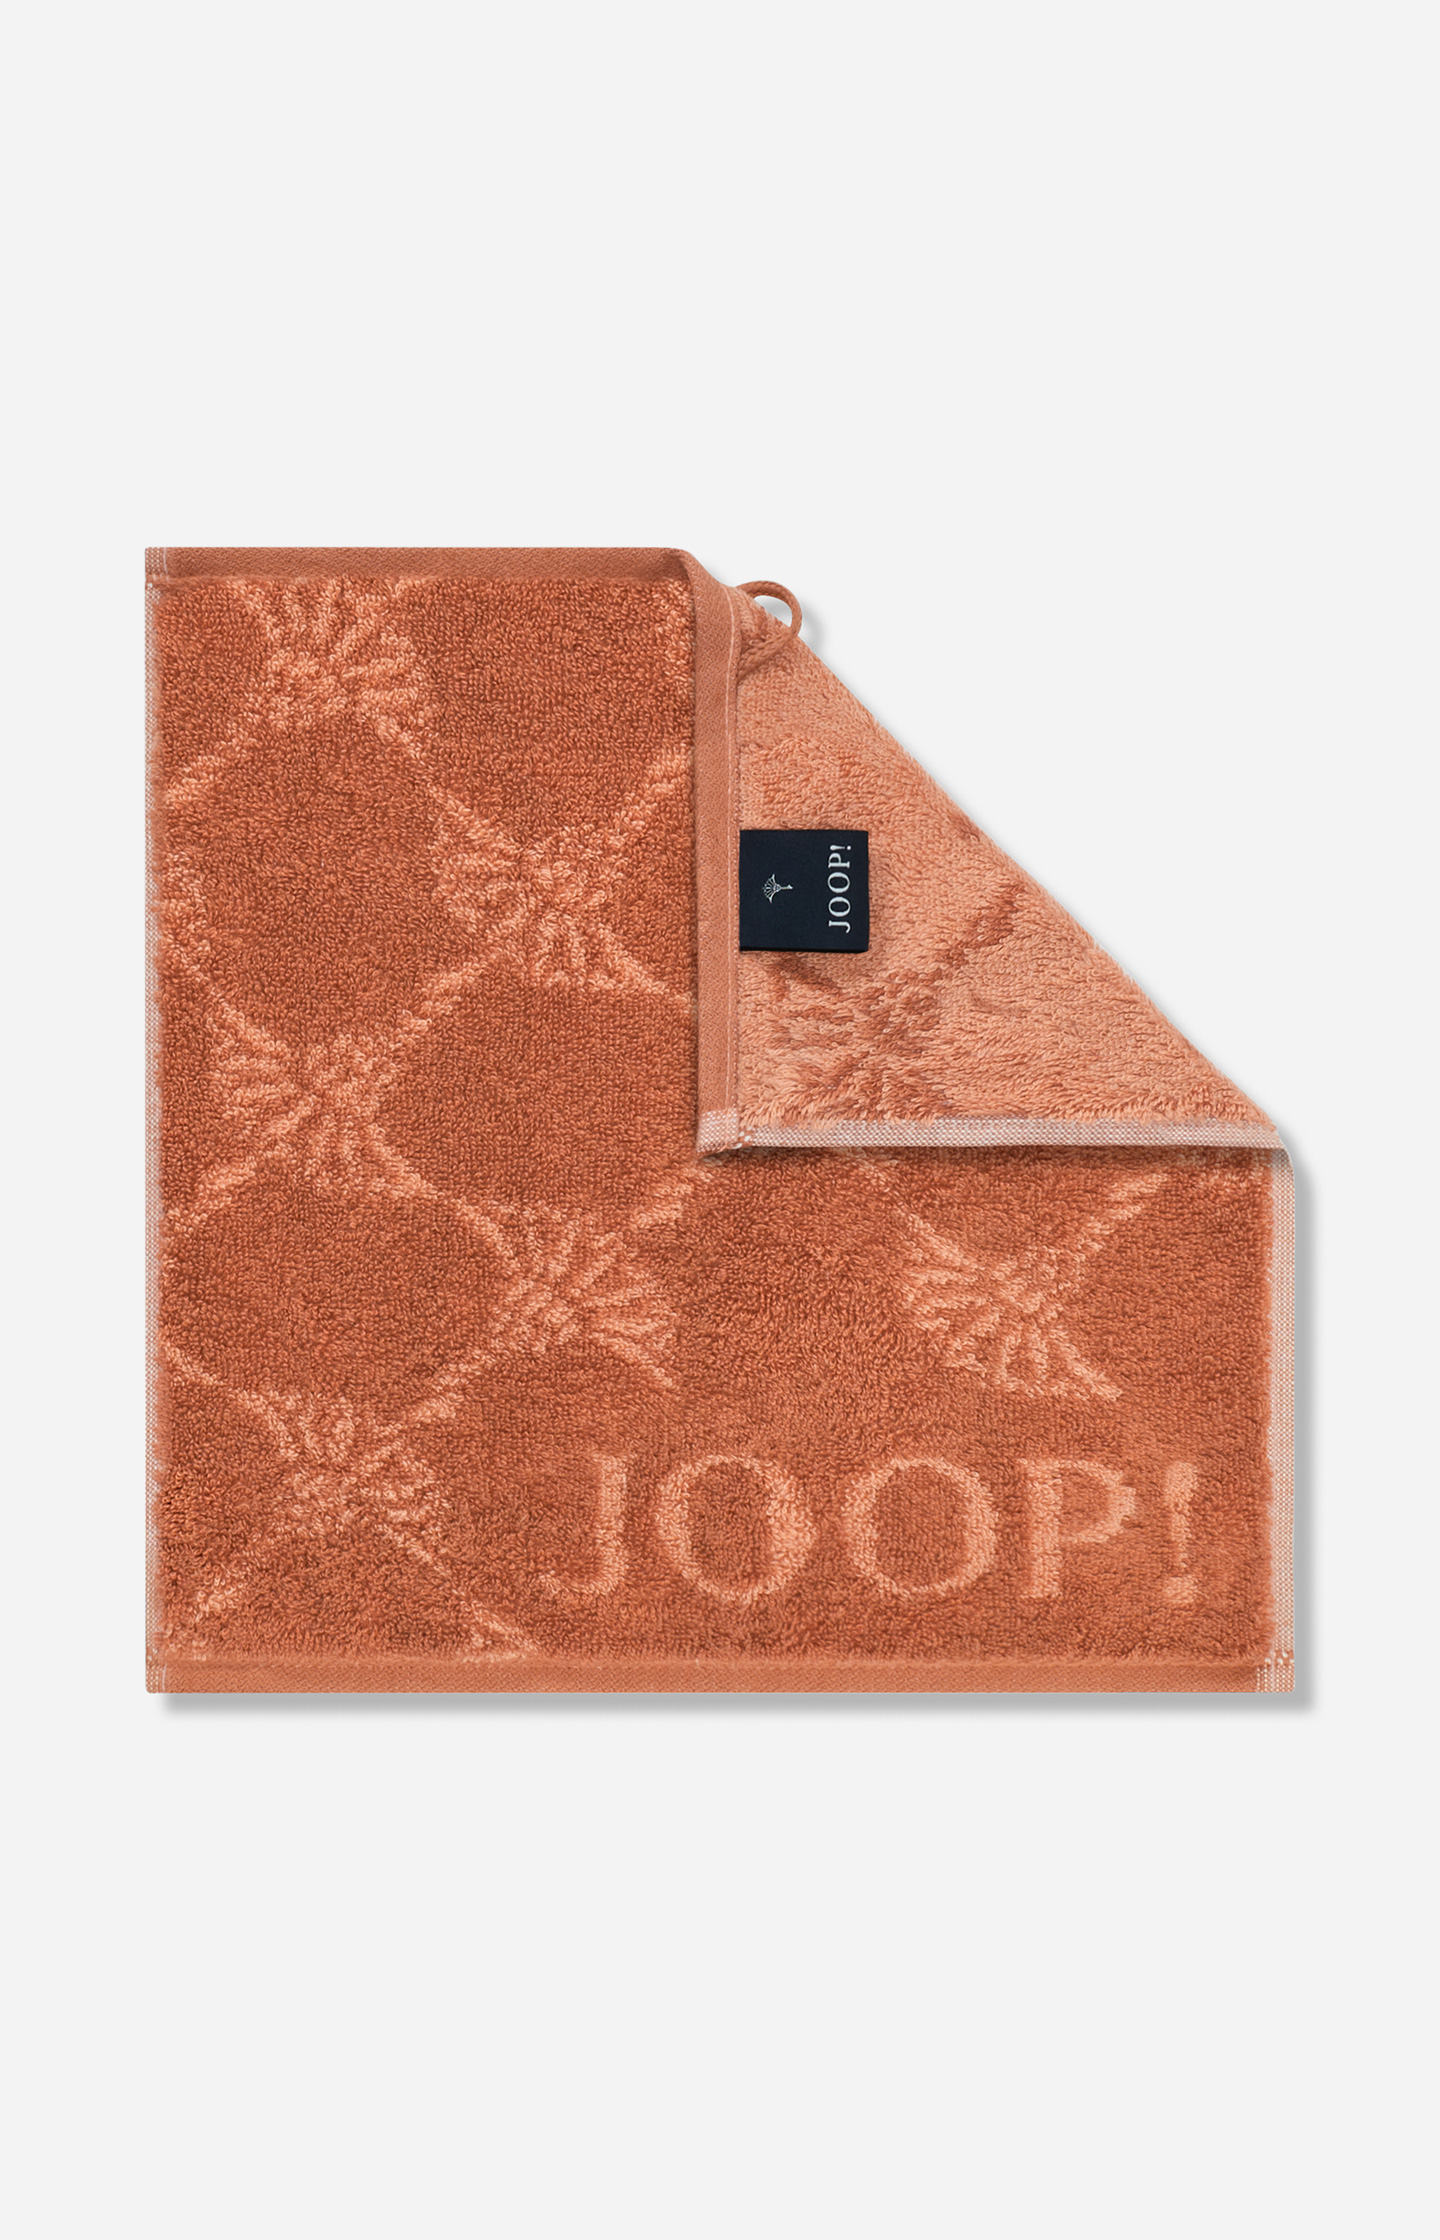 JOOP! JOOP! - copper the face cloth CLASSIC in CORNFLOWER Shop Online in